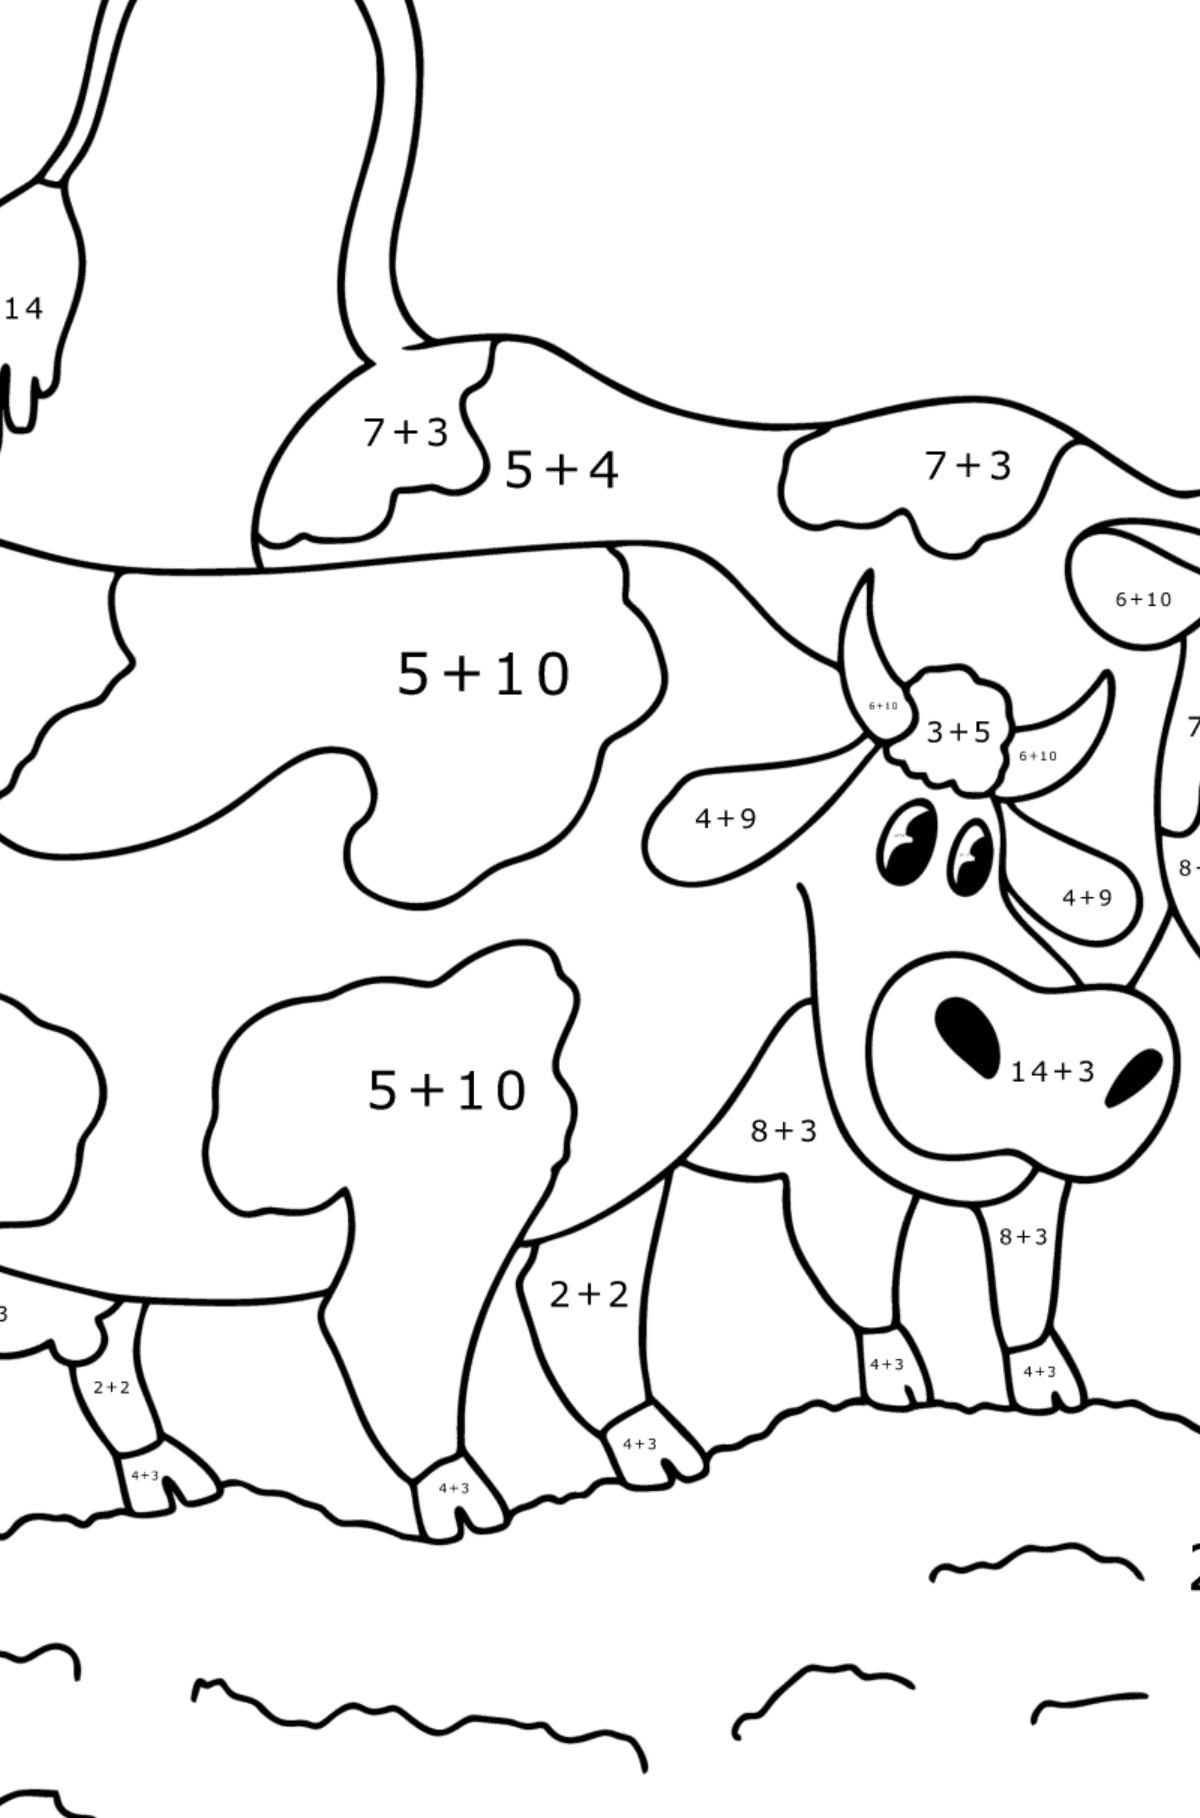 Tegning til fargelegging To kyr på enga - Matematisk fargeleggingsside - addisjon for barn